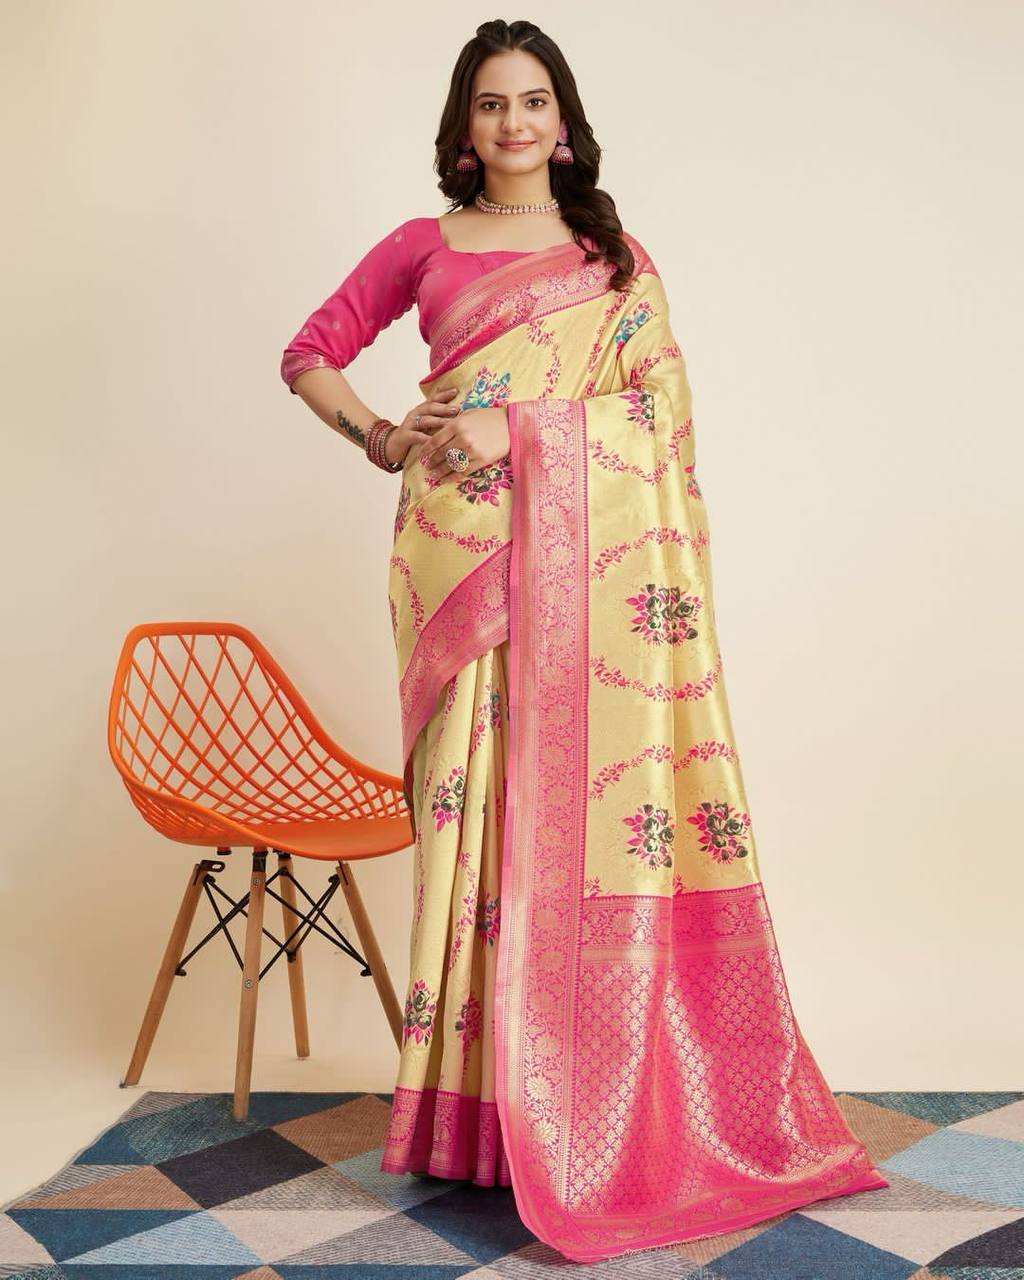 women's wear beautiful banarasi silk saree